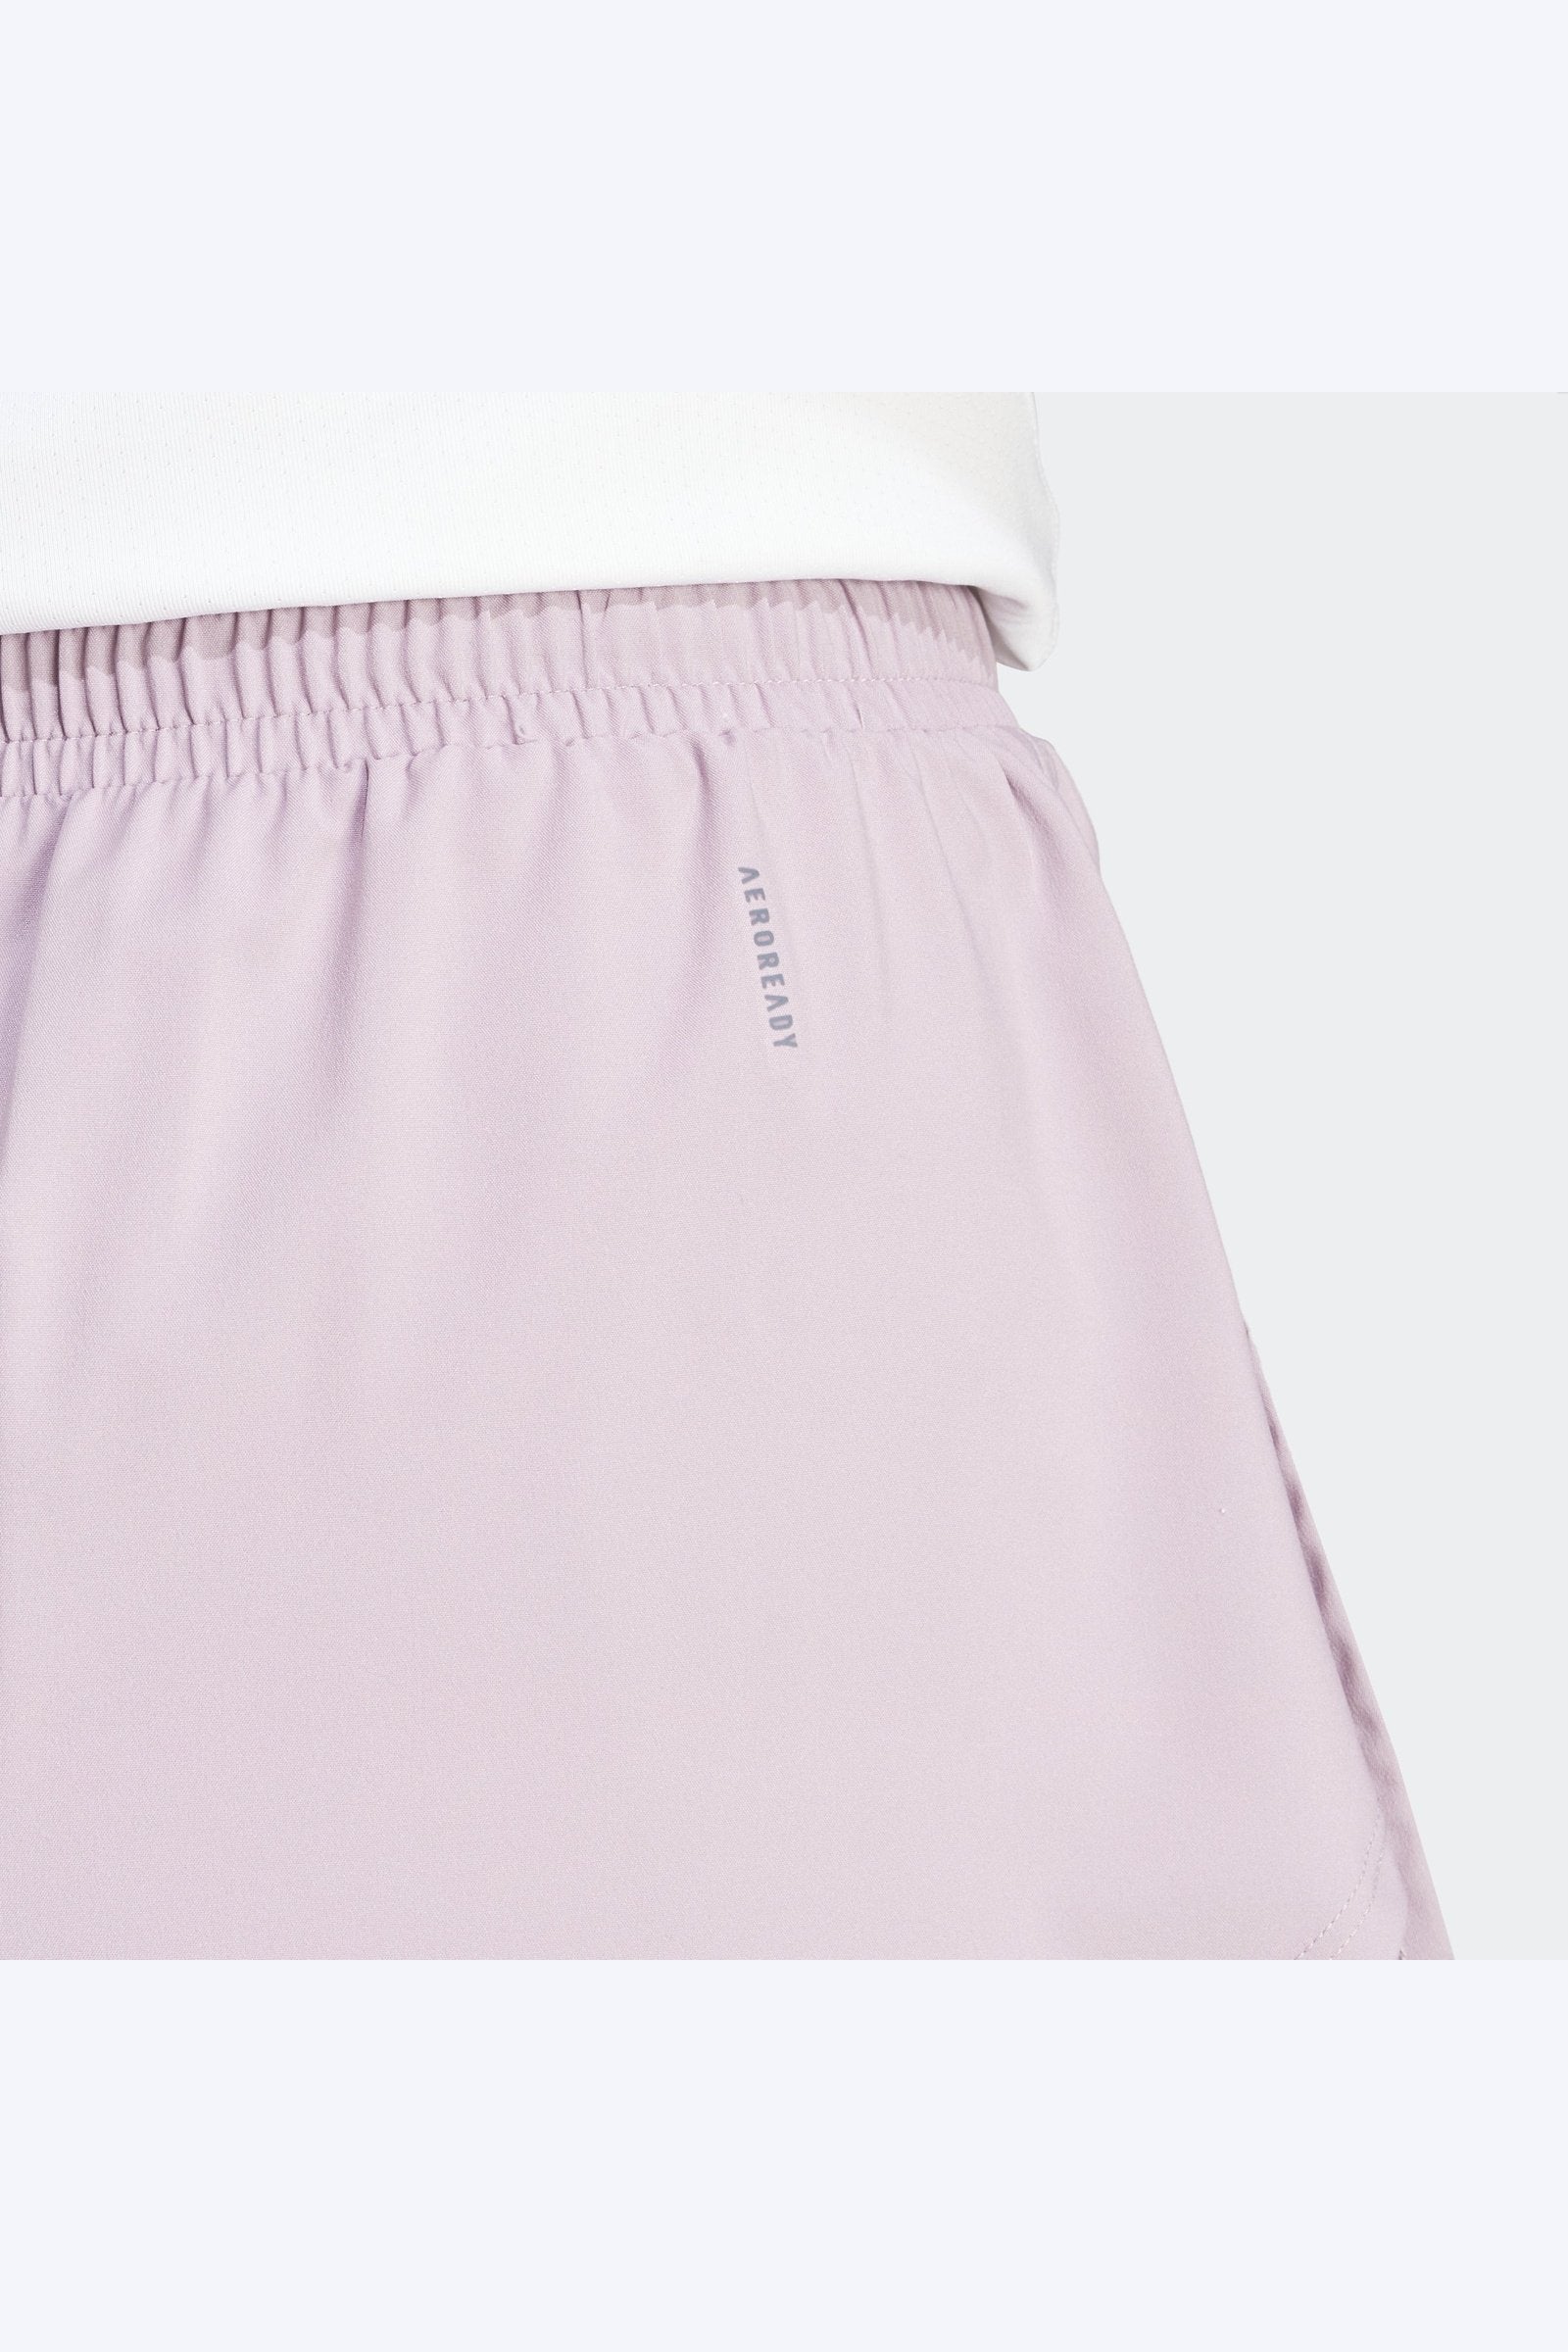 מכנסיים קצרים לנשים DESIGNED FOR TRAINING 2-IN-1 בצבע ורוד